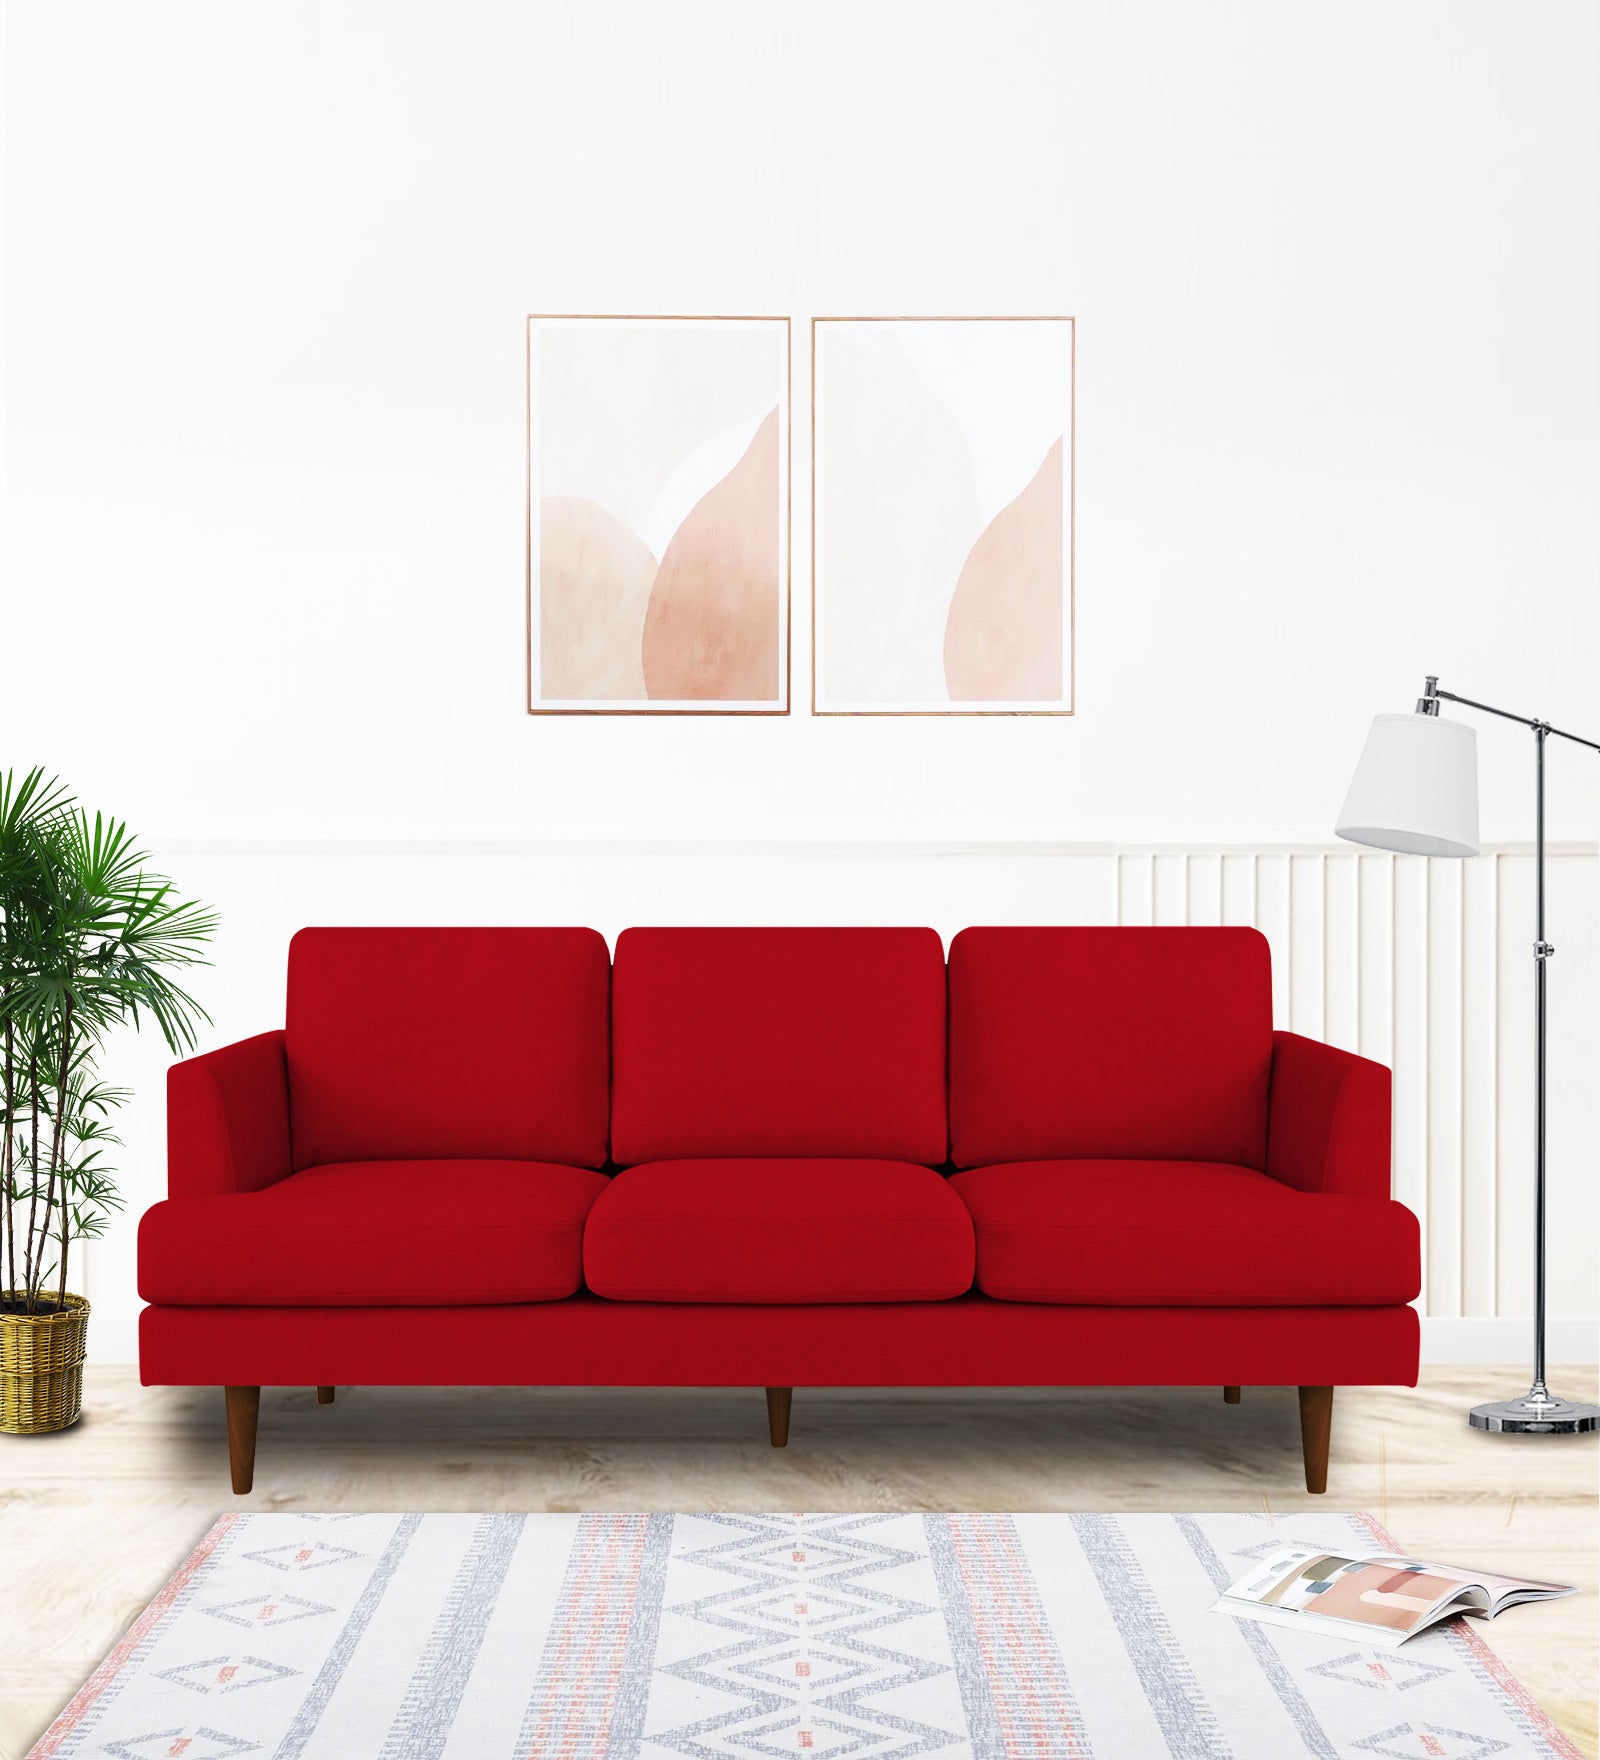 Motra Velvet 3 Seater Sofa in Berry Maroon Colour